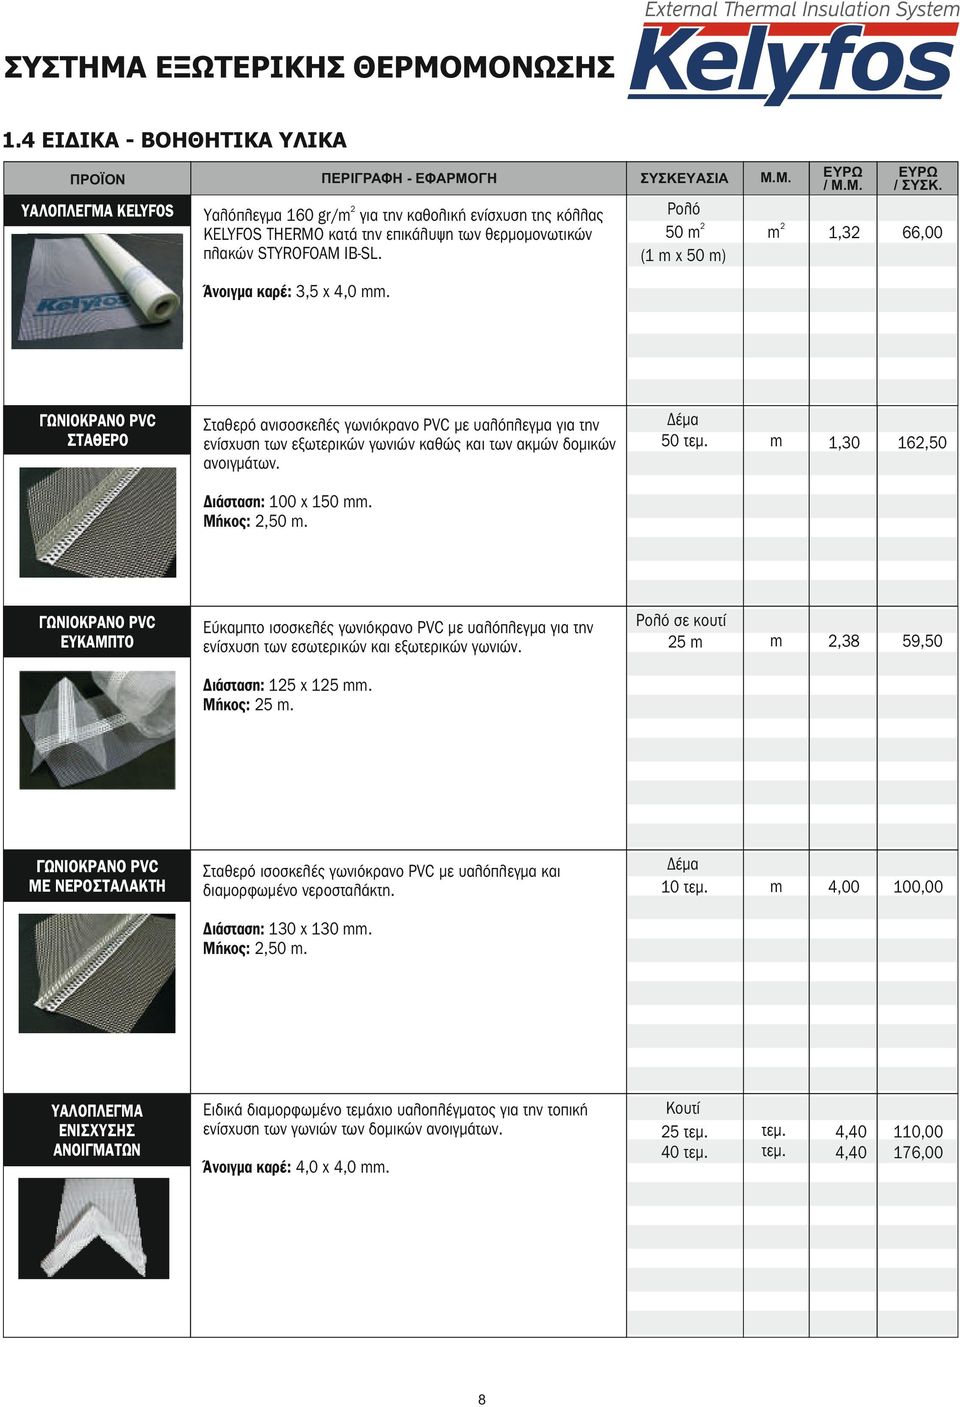 ΓΩΝΙΟΚΡΑΝΟ PVC ΣΤΑΘΕΡΟ Σταθερό ανισοσκελές γωνιόκρανο PVC υαλόπλεγμα για την ενίσχυση των εξωτερικών γωνιών καθώς και των ακμών δομικών ανοιγμάτων. Διάσταση: 100 x 150. Μήκος: 2,50.